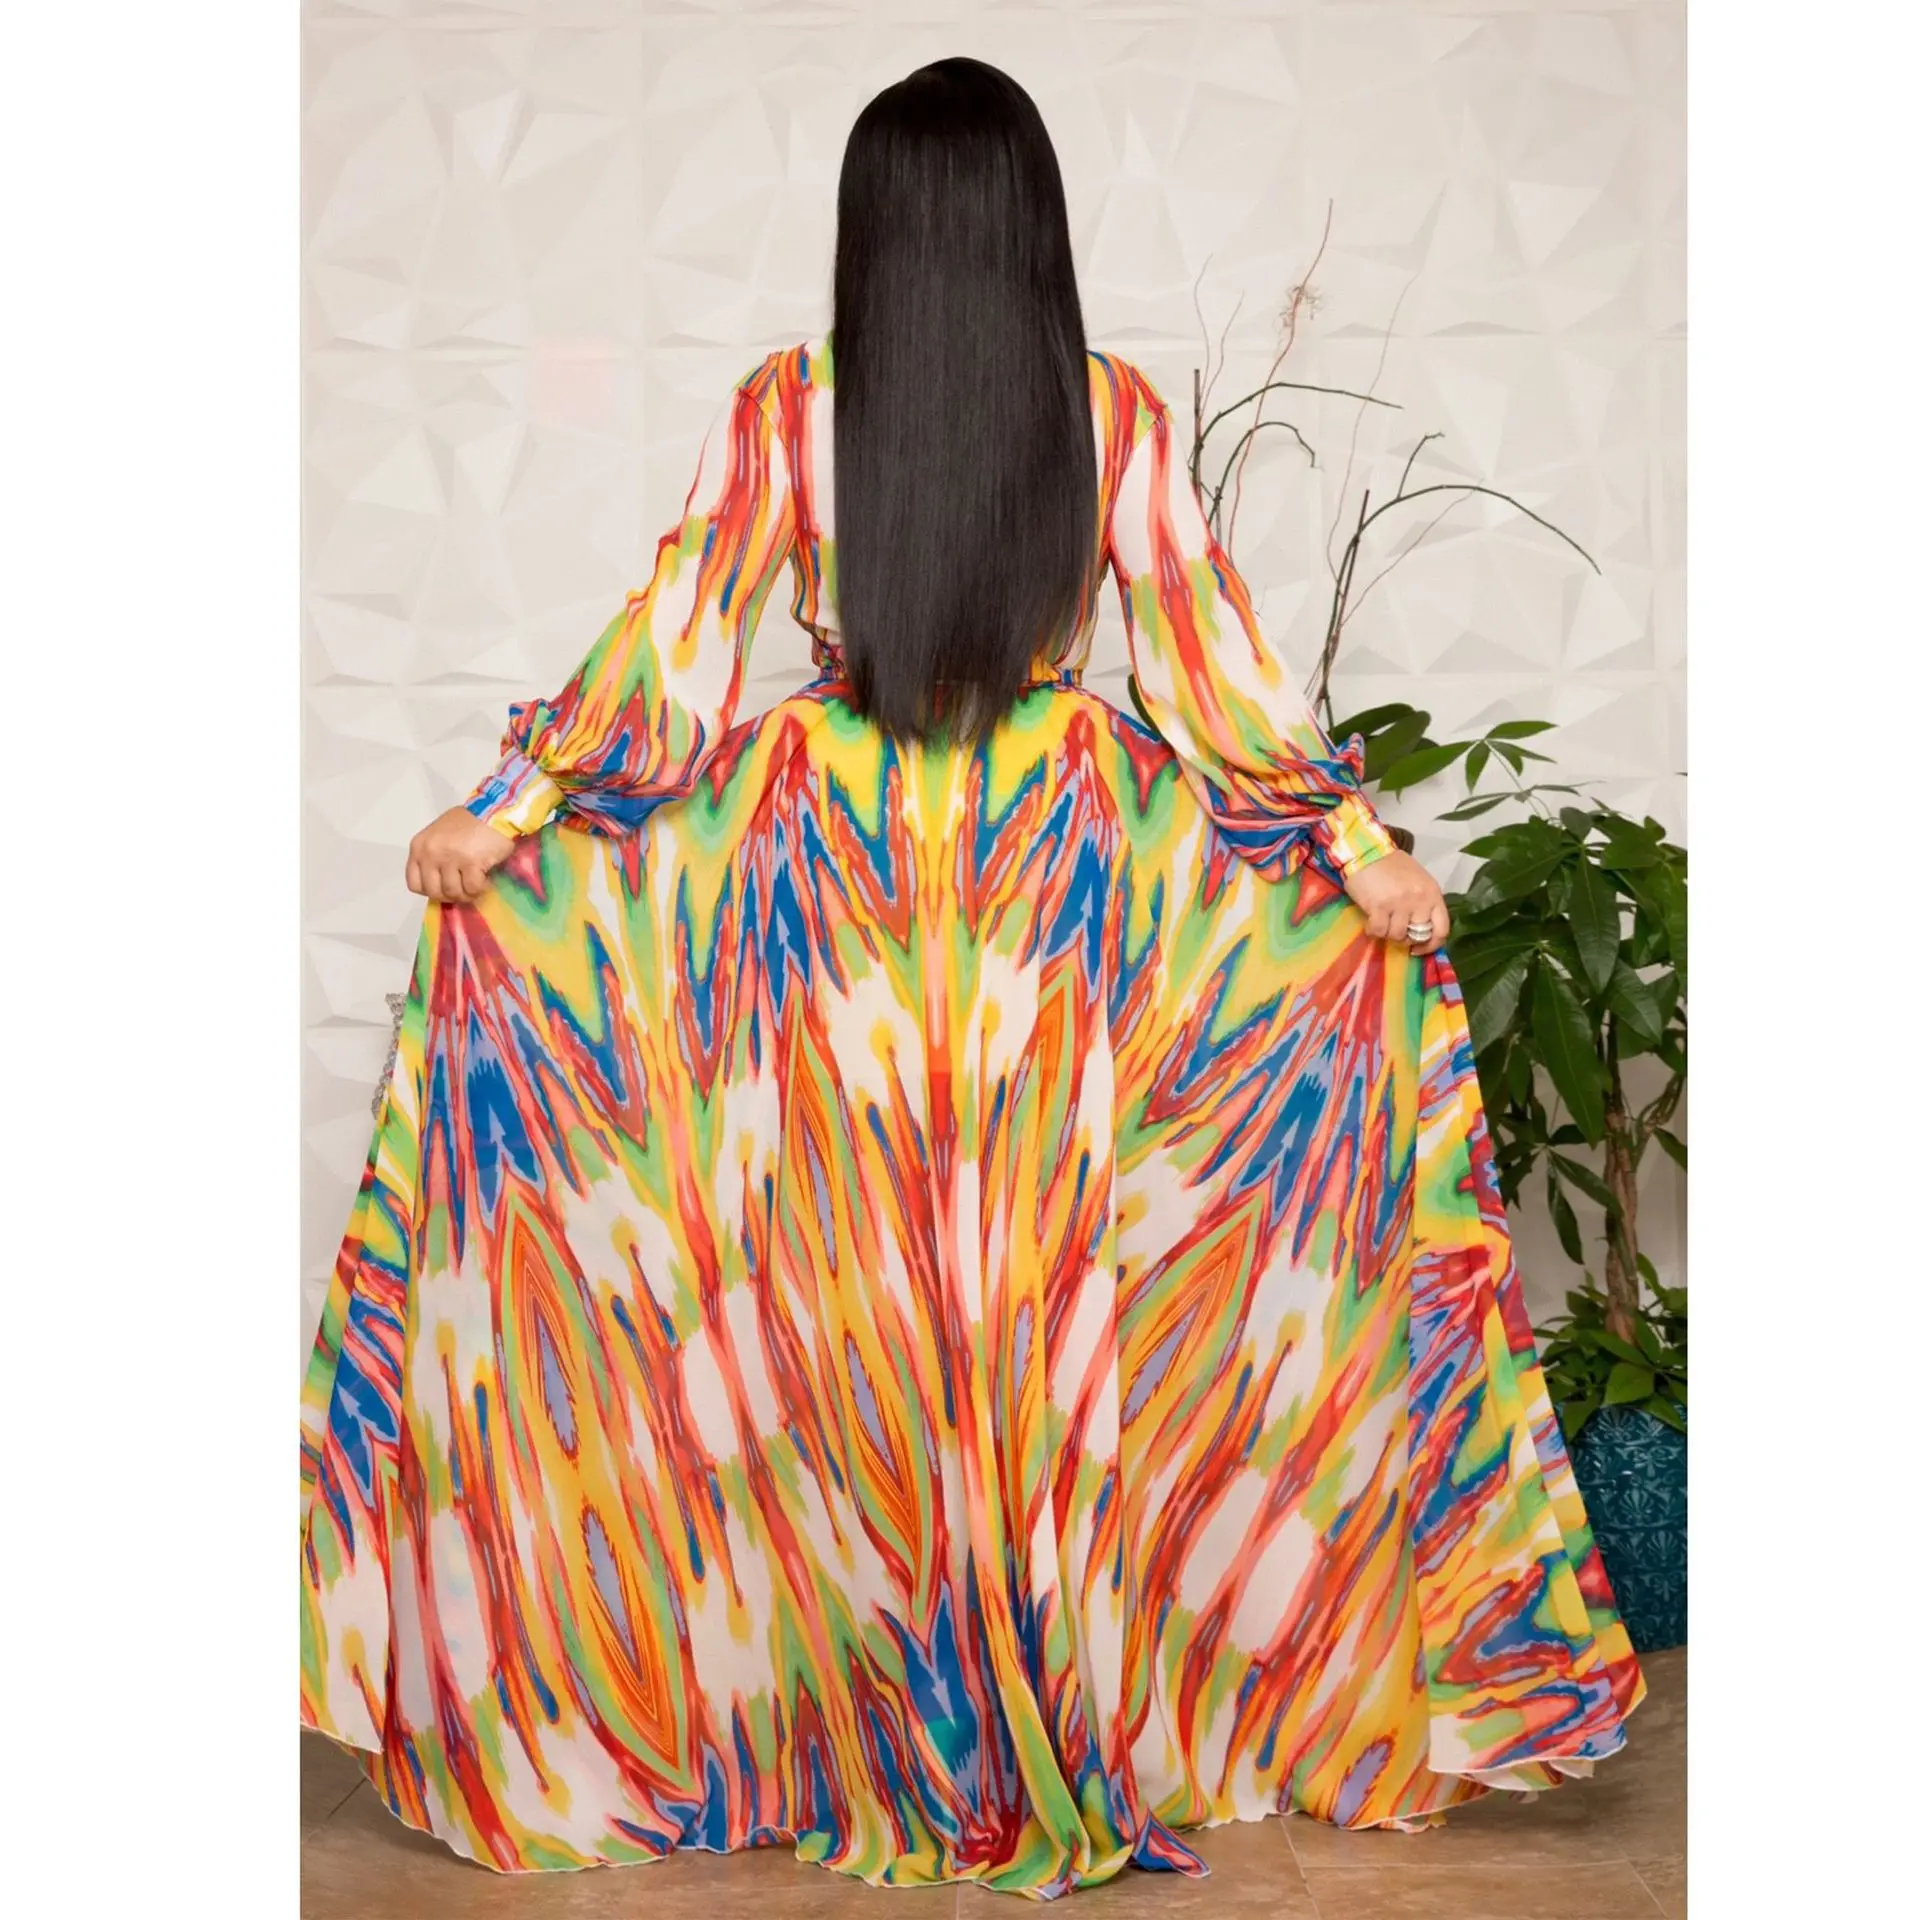 S-5XL большого размера в африканском стиле платья для женщин халат свободное платье Дашики цветочный принт леди Африка одежда платье для женщин